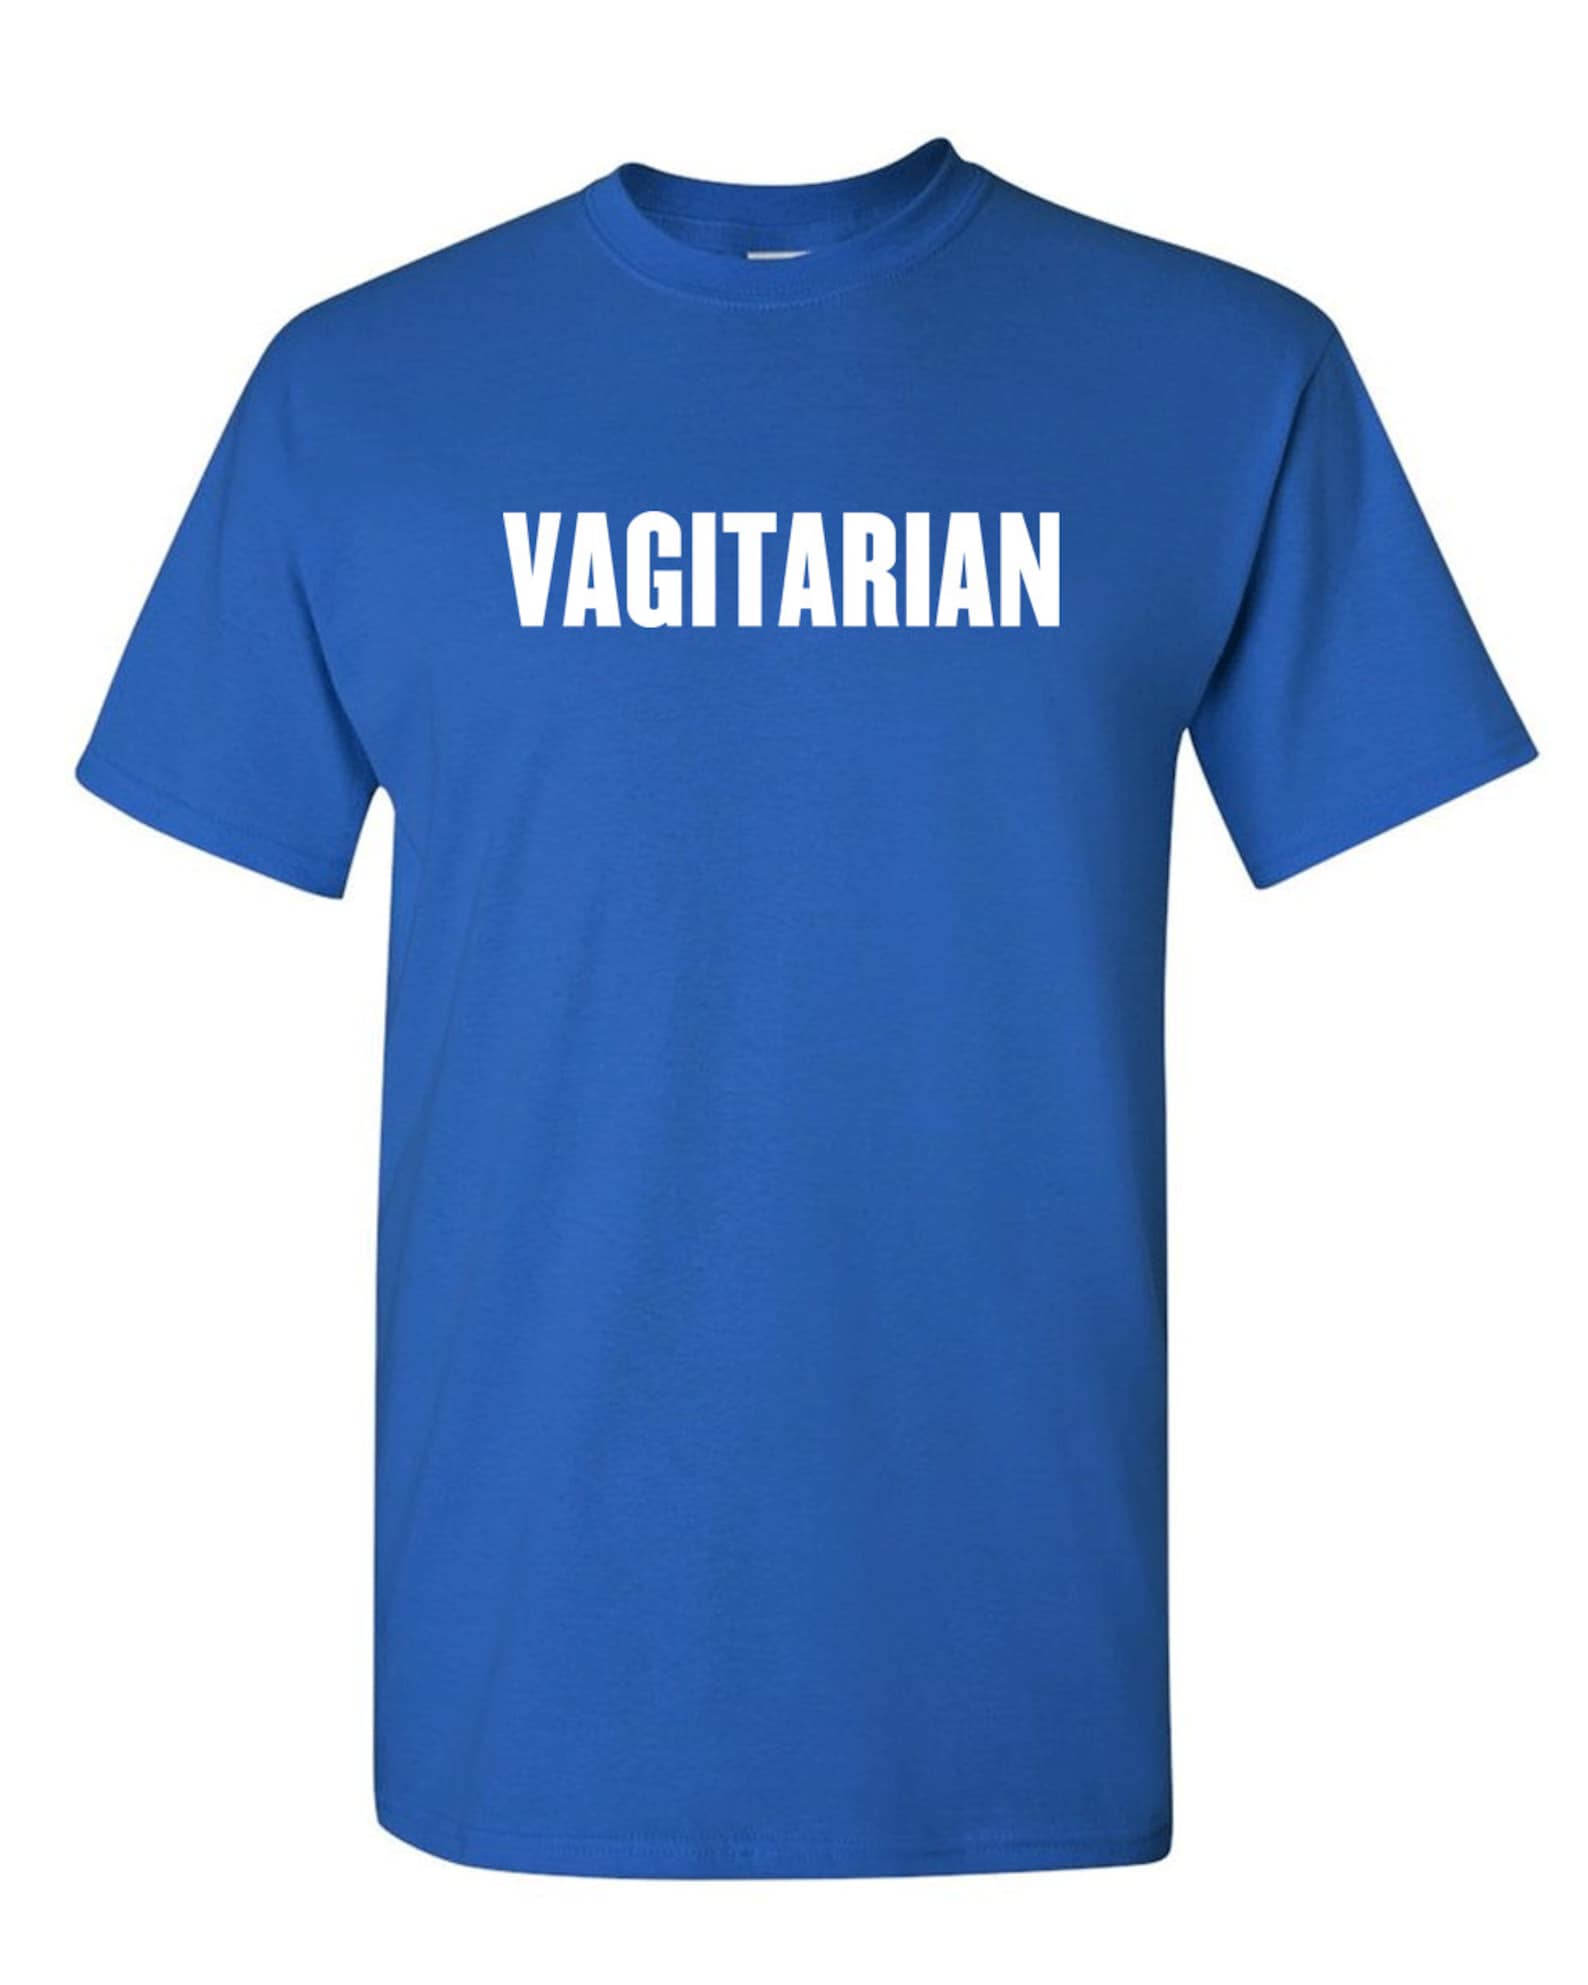 Vagitarian Tees Funny Mens T Shirt Adult Humor T Shirts Etsy